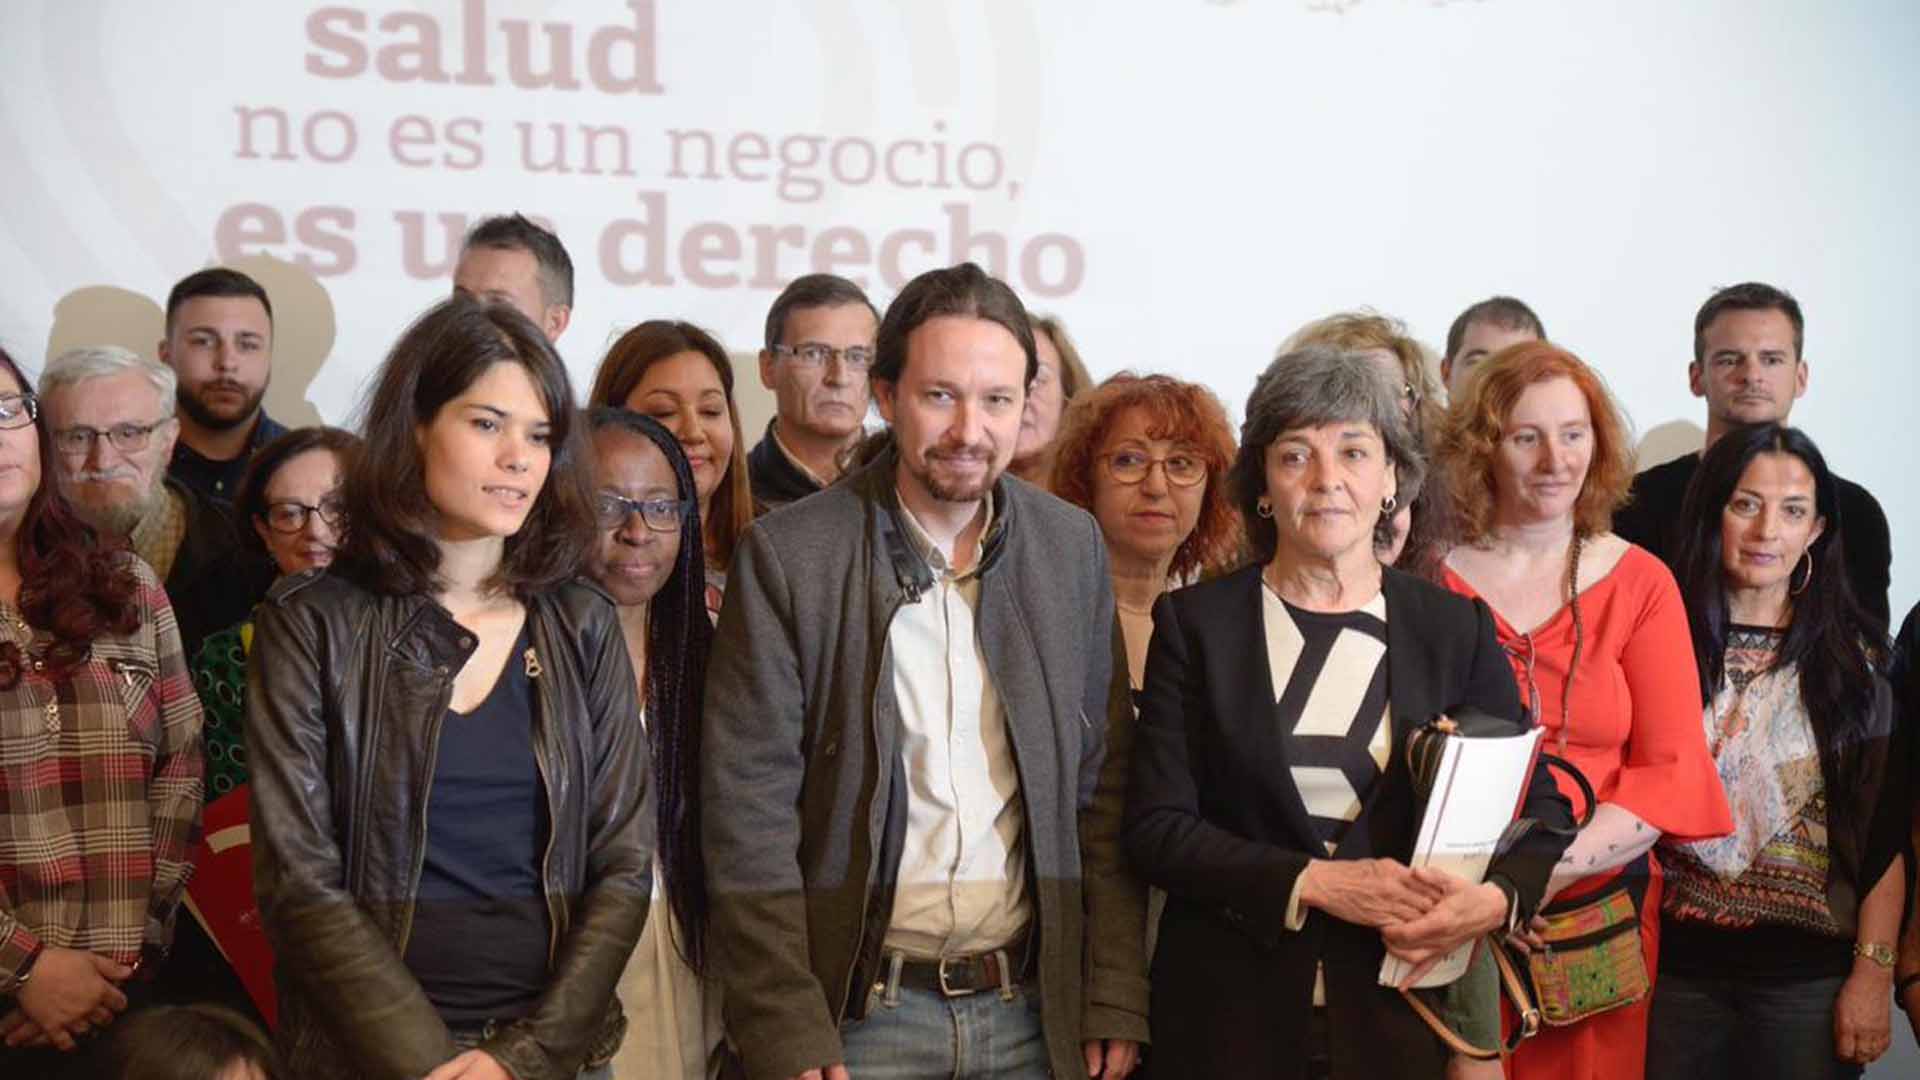 Podemos e IU concurrirán juntos a las elecciones autonómicas madrileñas del 26M